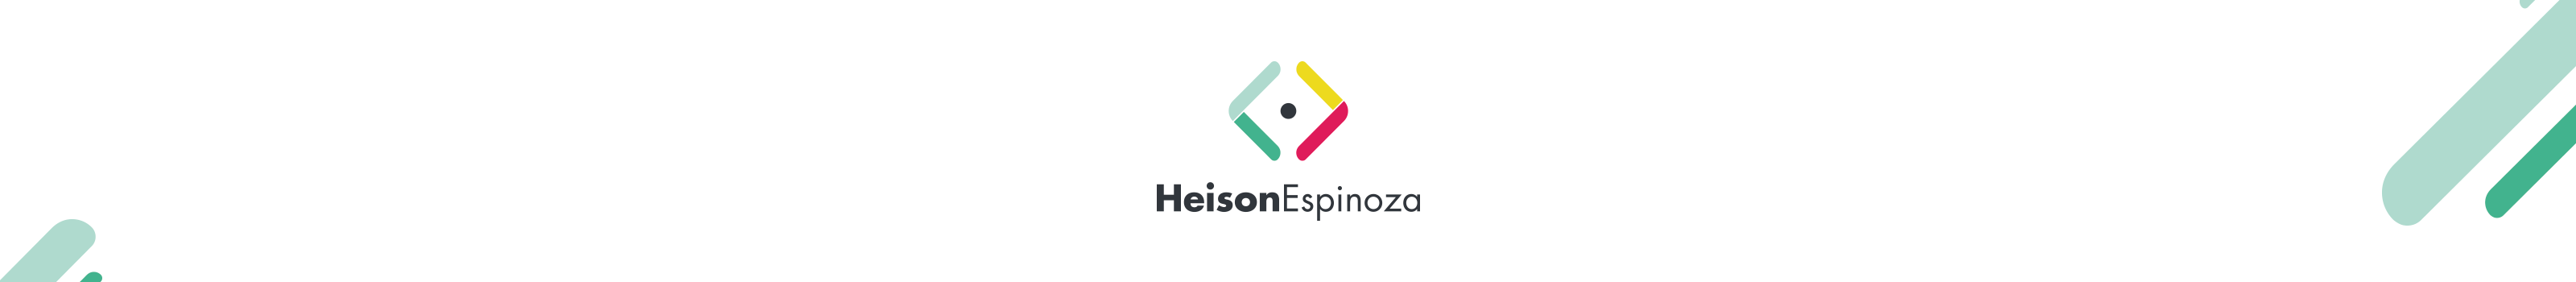 Heison Espinoza's profile banner